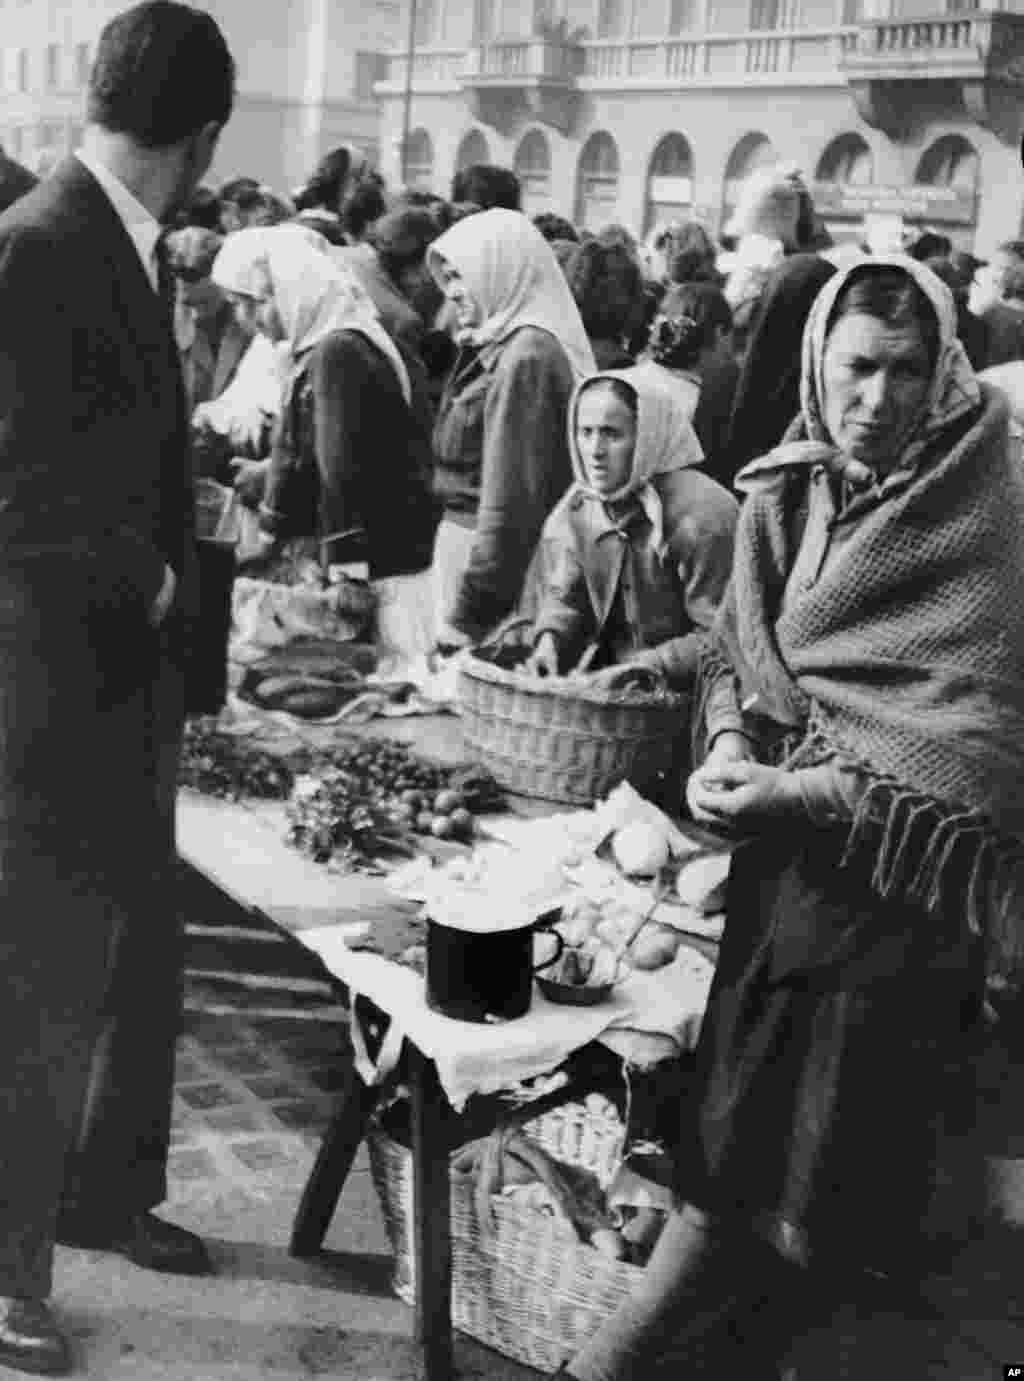 Белградський ринок в 1950 році, коли напруженість у відносинах із Радянським Союзом призвела до торгової блокади, нестачі продовольства і побоювань військового вторгнення. У той час Тіто проводив безжальні репресії проти тих, хто співчував Радянському Союзові. Сотні людей були вбиті під час політичних репресій, ще тисячі були відправлені у виправно-трудові табори